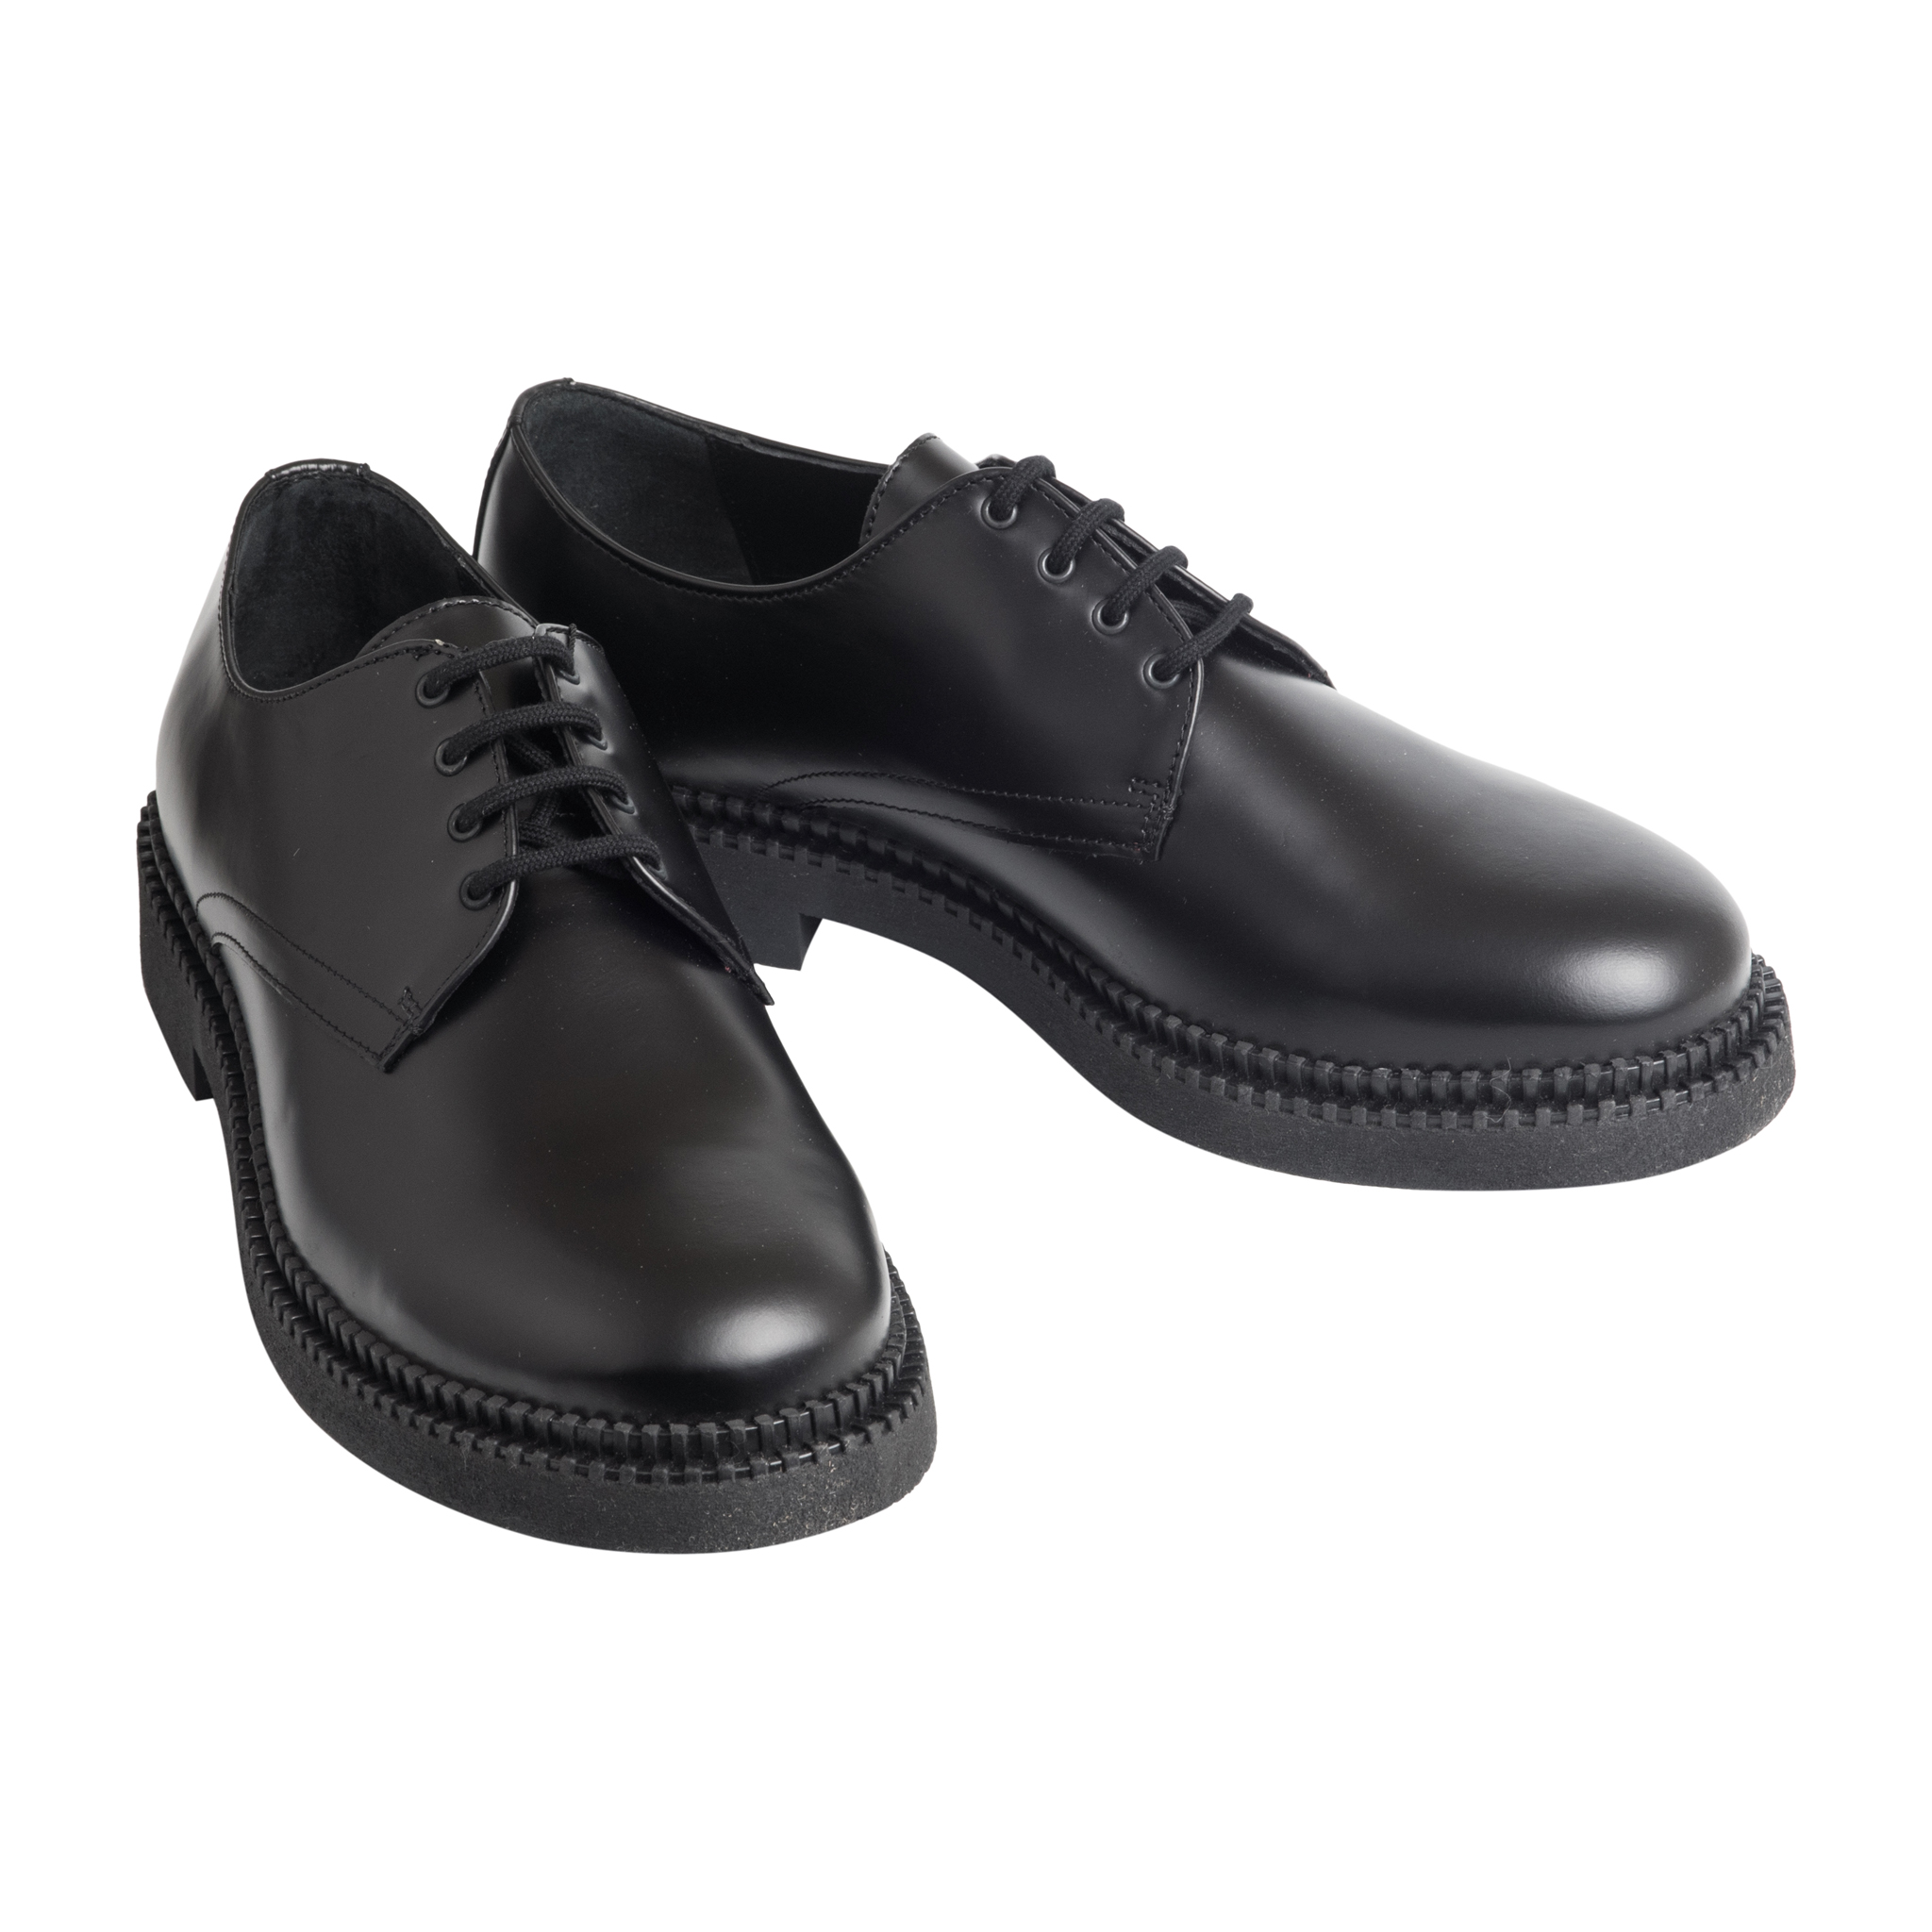 Мужская кожаная обувь Zara (туфли) - рейтинг 4,82 по отзывам экспертов ☑  Экспертиза состава и производителя | Роскачество